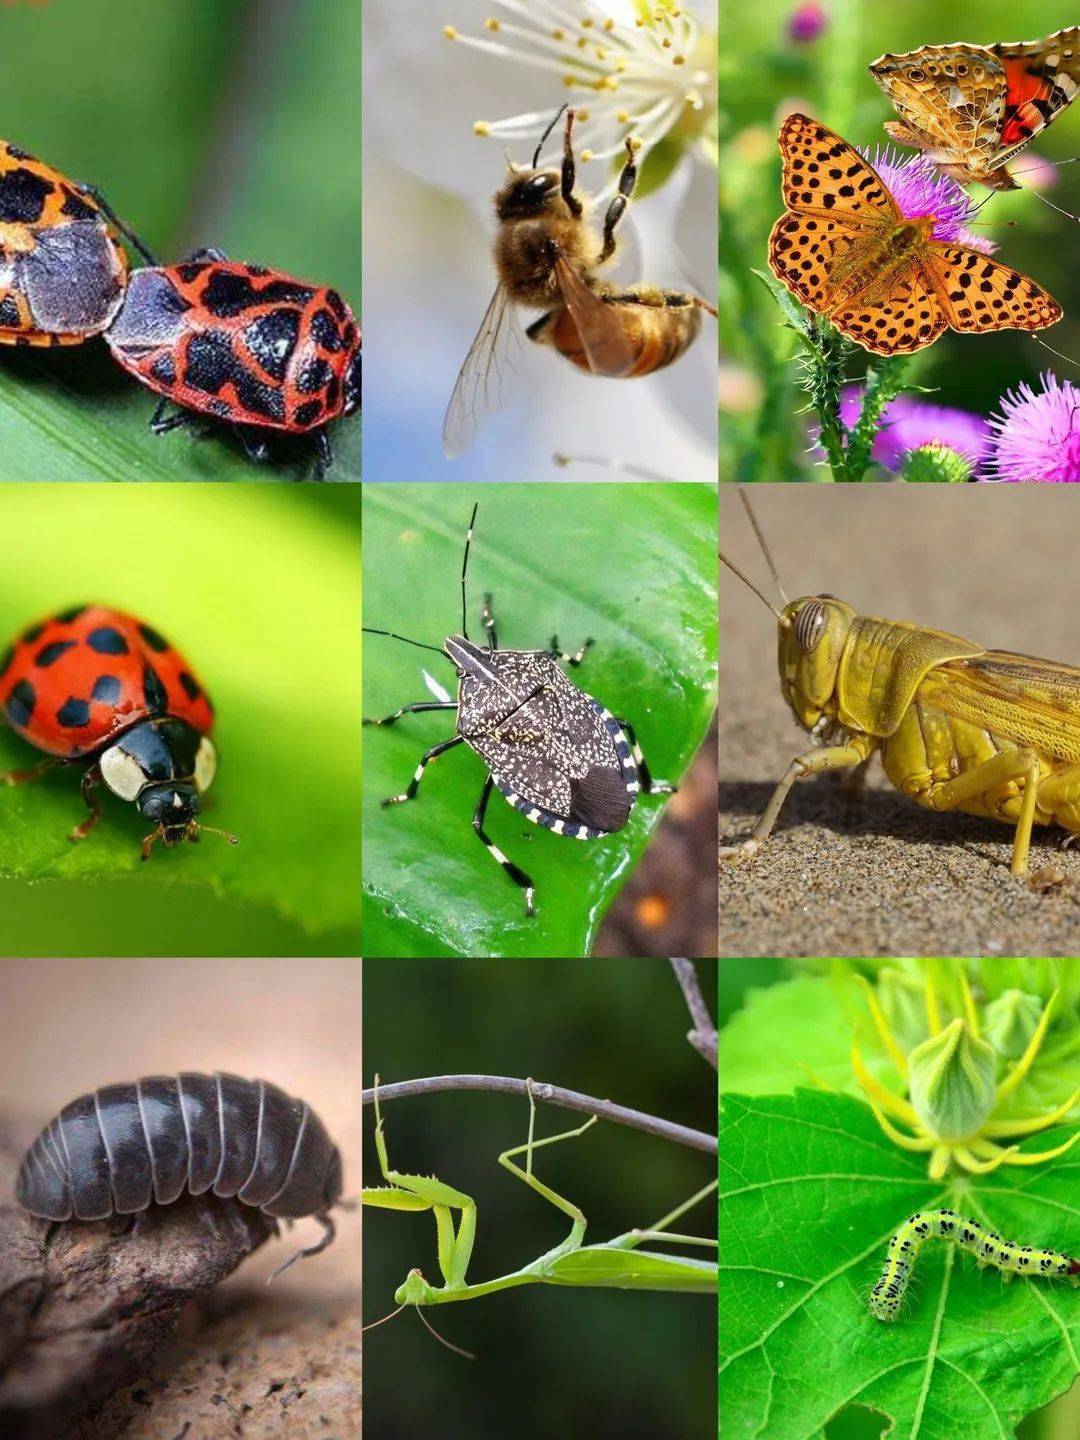 八种常见昆虫图片